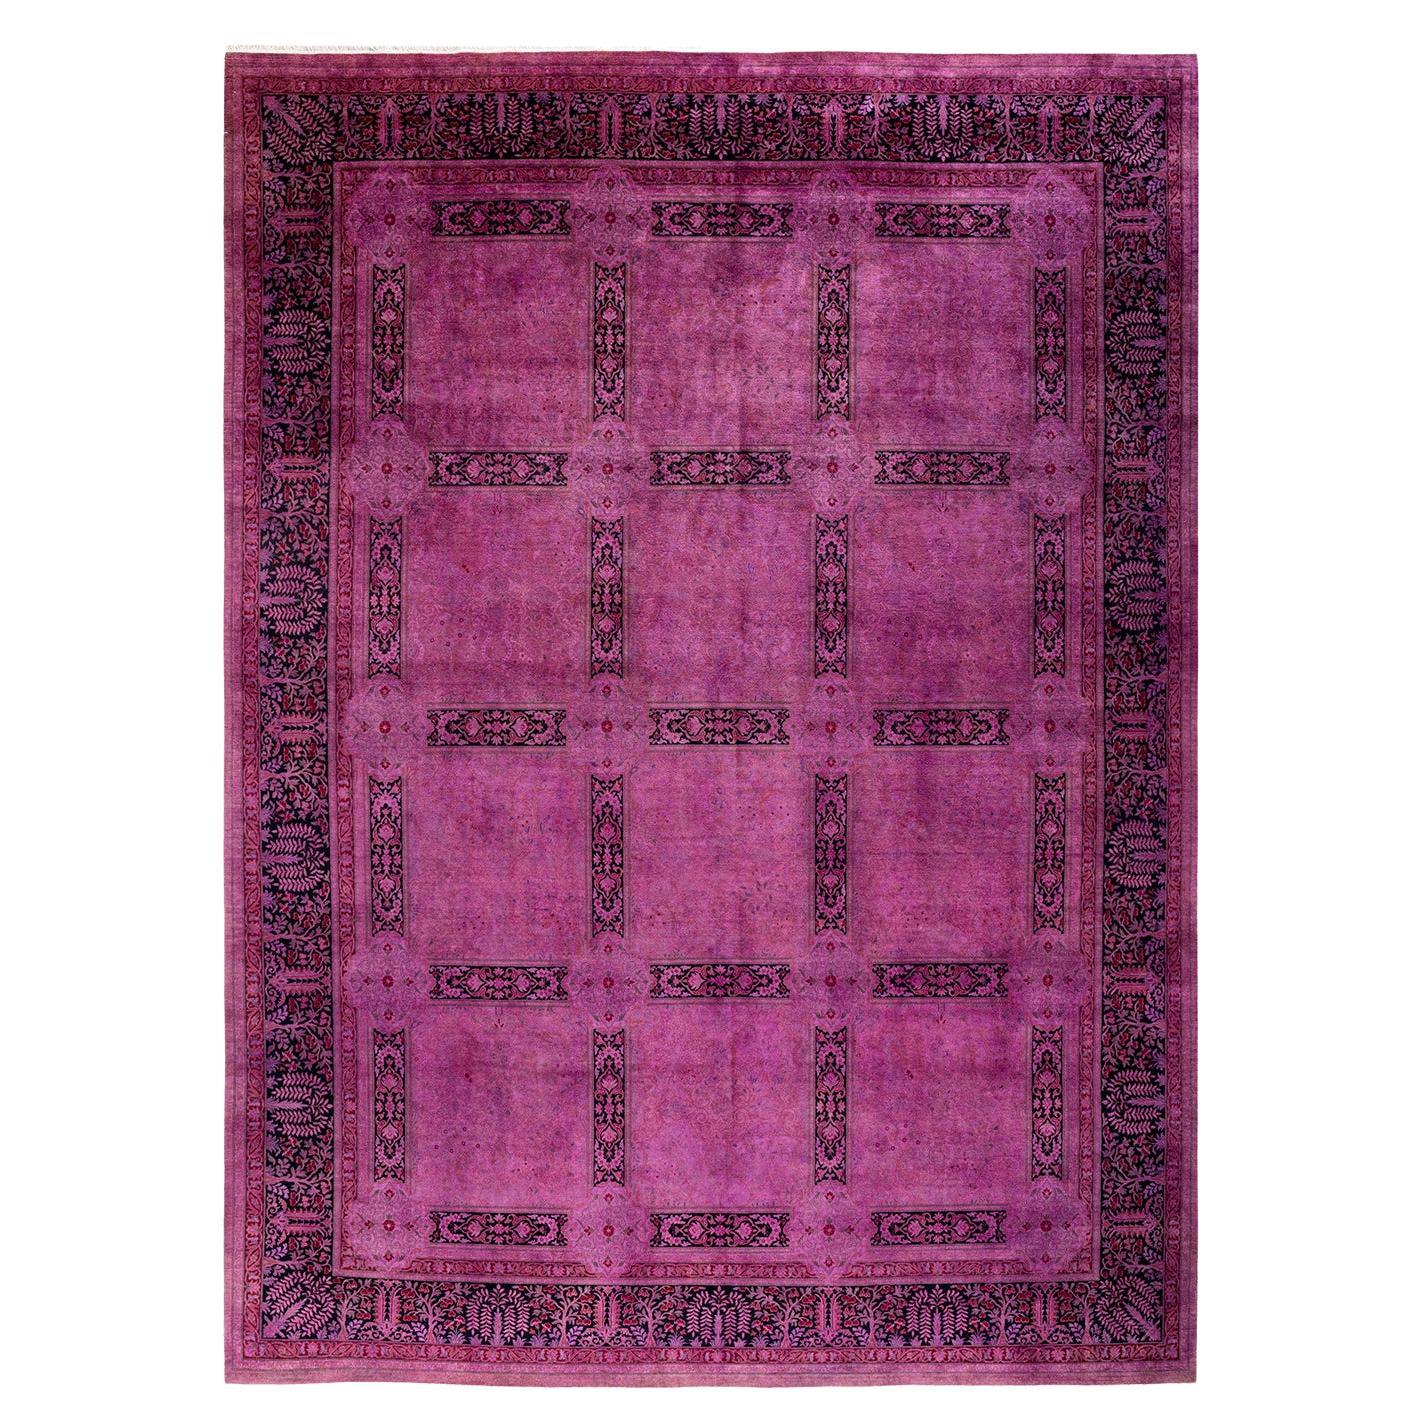 Overdyed Handgeknüpfter rosa Teppich aus Wolle